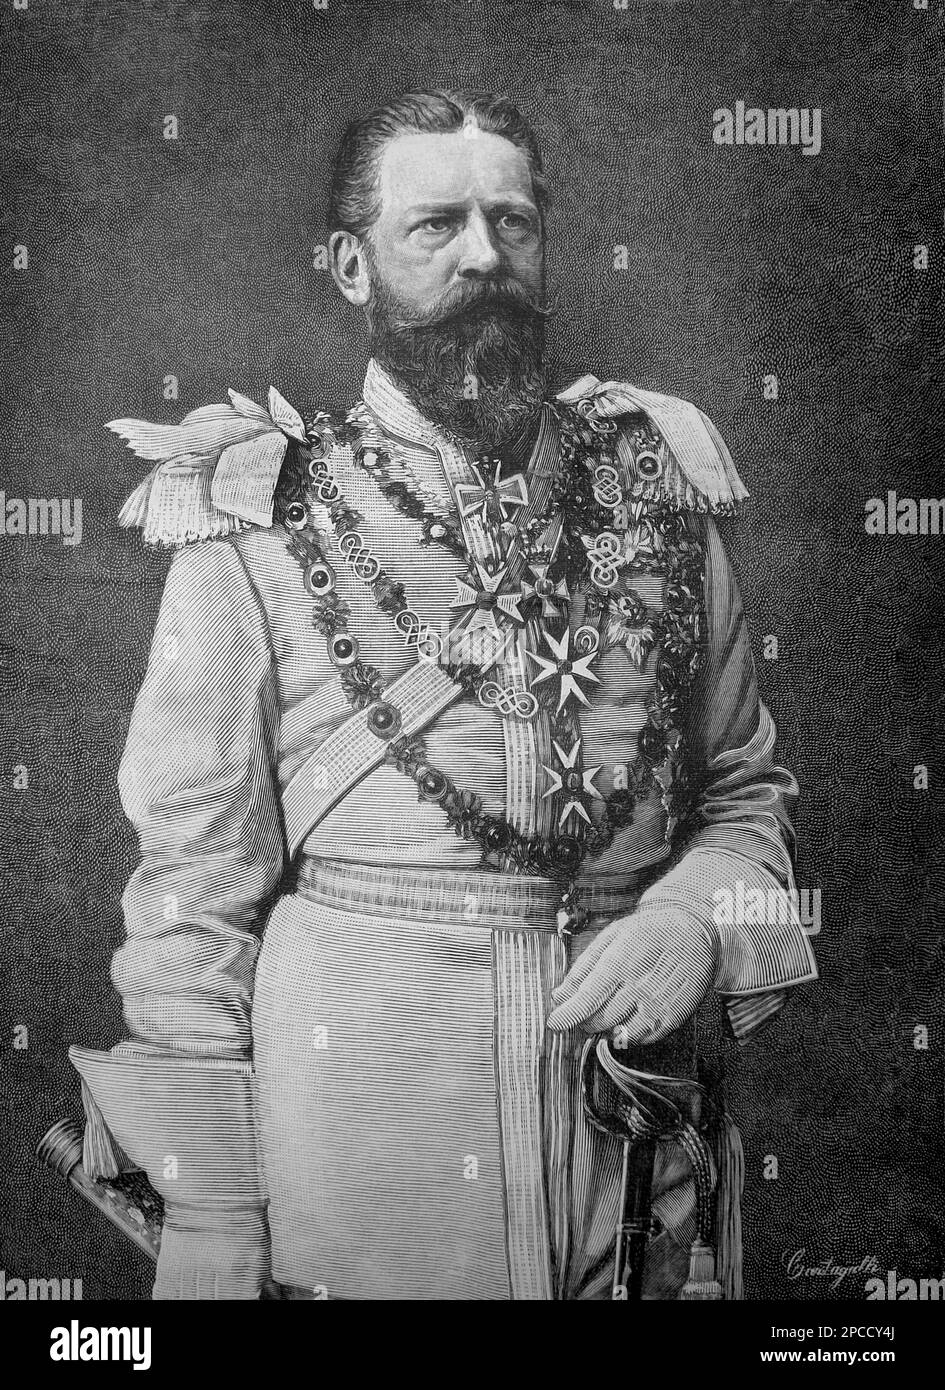 1888 , DEUTSCHLAND : Kaiser FREDERICK III ( 1831 - 1888 ) HOHENZOLLERN , Vater von Kaiser Wilhelm II ( Guglielmo II ) , König von Preußen , Kaiser von Deutschland ( 1859 - 1941 ) , Enkel von Königin Victoria von England . Gravur von ILLUSTRAZIONE ITALIANA 1888. Frederick William (wie er vor dem Thronantritt bekannt war) wurde in Potsdam geboren, dem Sohn von Prinz William von Preußen und Prinzessin Augusta von Sachsen-Weimar. Sein Vater war ein jüngerer Bruder von König Friedrich William IV. Von Preußen . 1858 heiratete Frederick William Prinzessin Victoria (' Vicky ') aus Großbritannien und Irland, die älteste Stockfoto